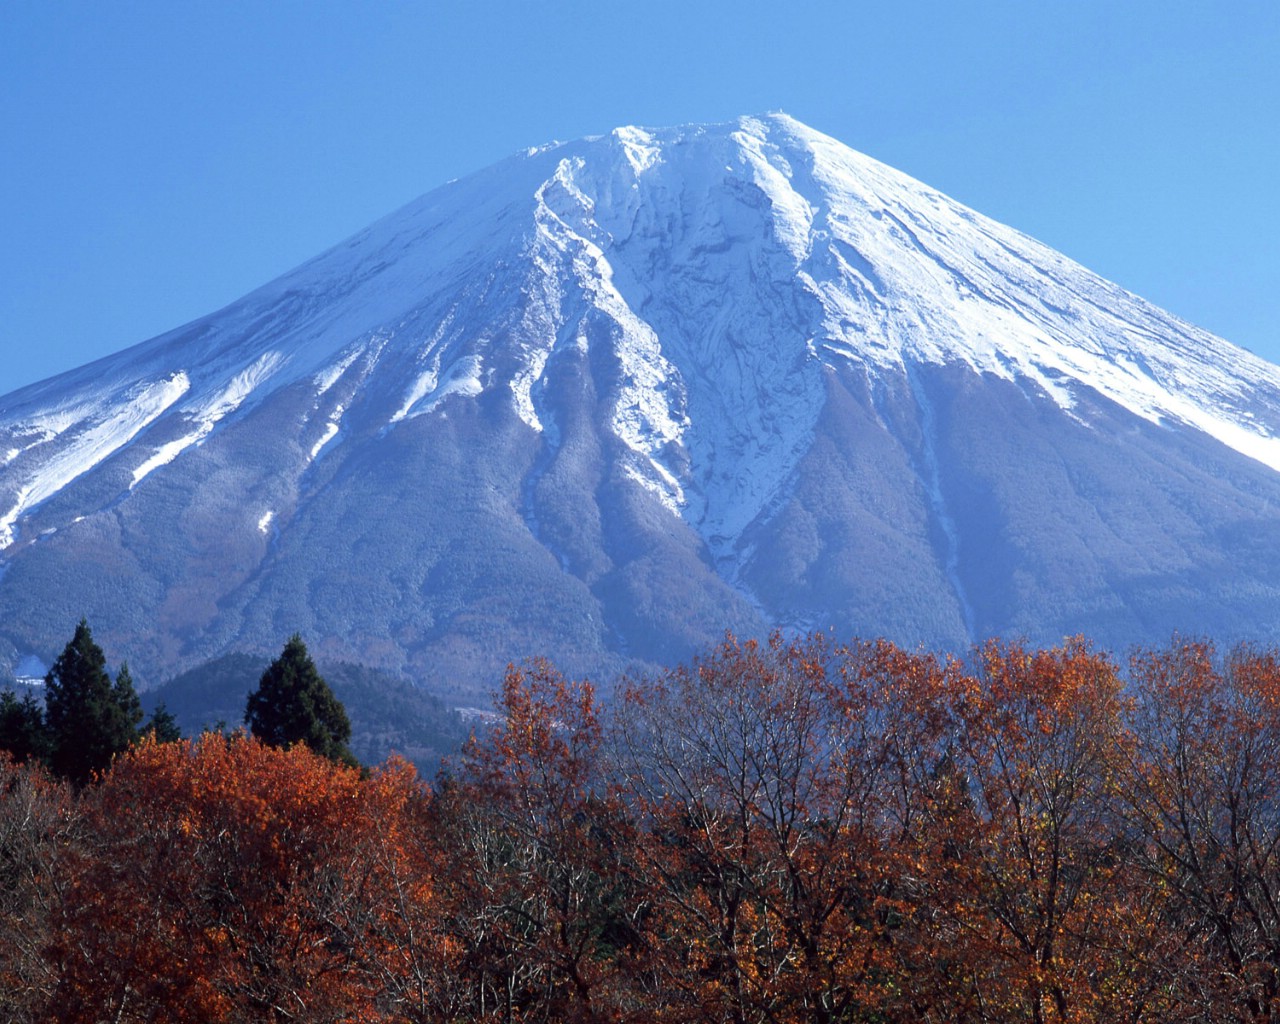 壁纸1280x1024富士山风光壁纸 富士山风光壁纸 富士山风光图片 富士山风光素材 风景壁纸 风景图库 风景图片素材桌面壁纸